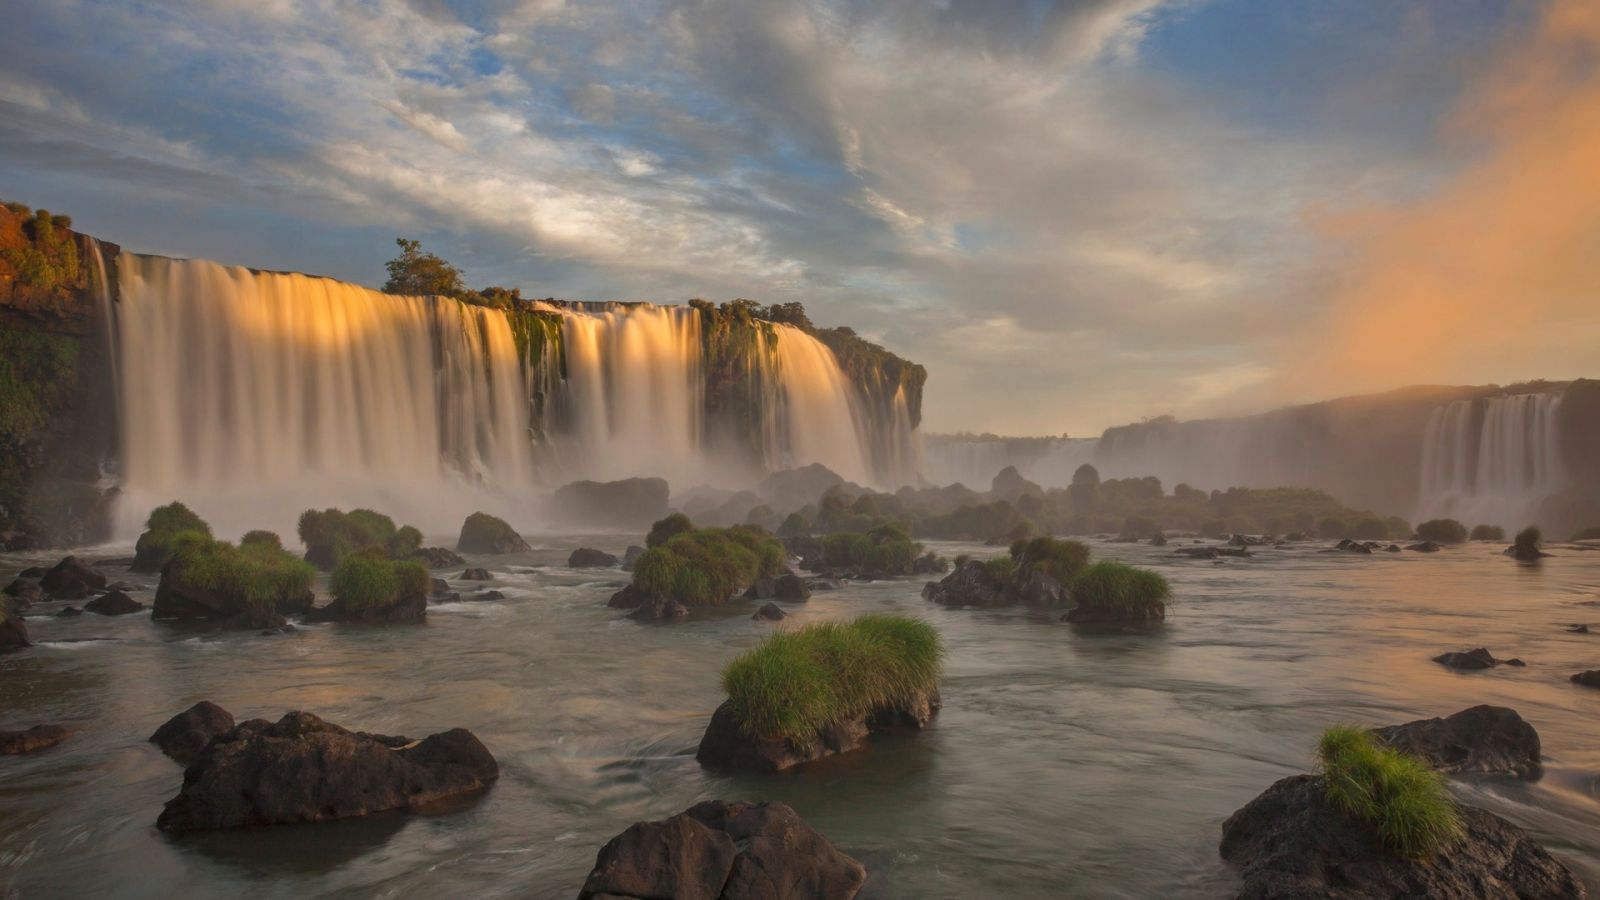 Cataratas do Iguaçu (Thác nước Iguacu) - Tọa lạc ngay biên giới Brazil và Argentina